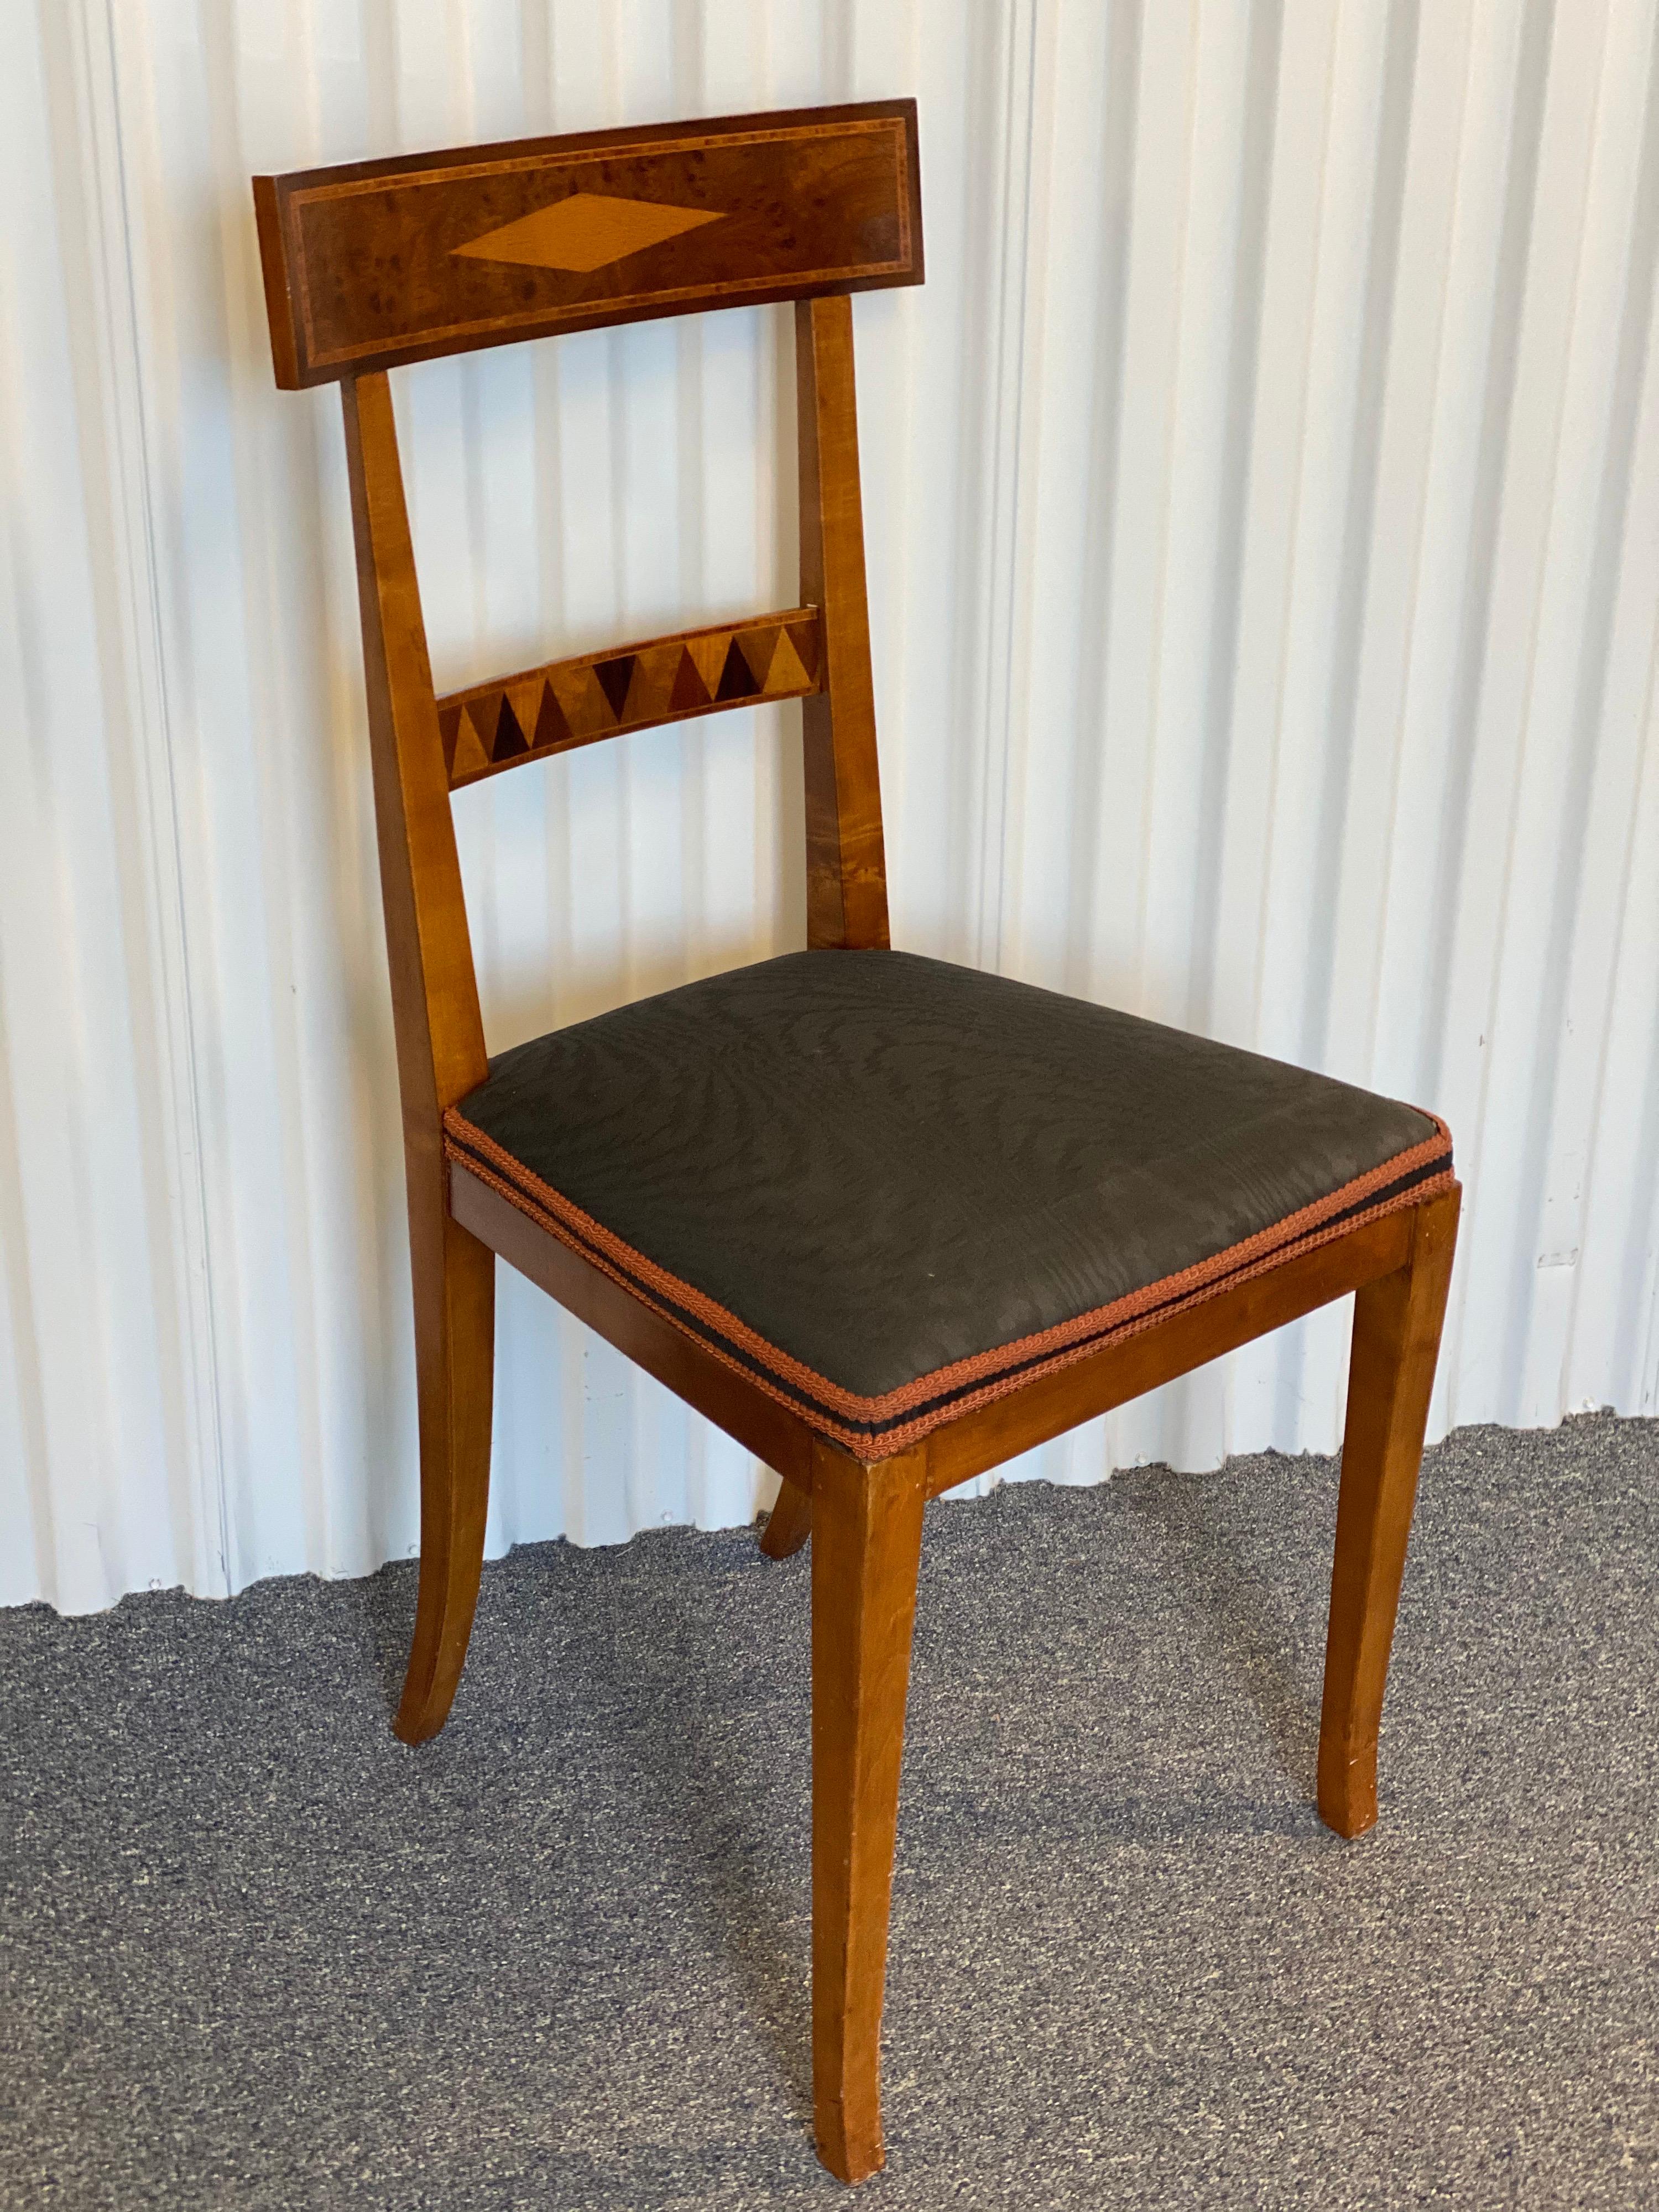 Beistellstuhl aus Mahagoni im neoklassizistischen Stil. Hergestellt aus schönem Mahagoniholz mit einem gepolsterten Sitz aus blau-grauer Moiré-Seide. Dieser Stuhl hat ein Wurzelholz- und Obstholzparkett auf der vorderen Querschiene sowie ein